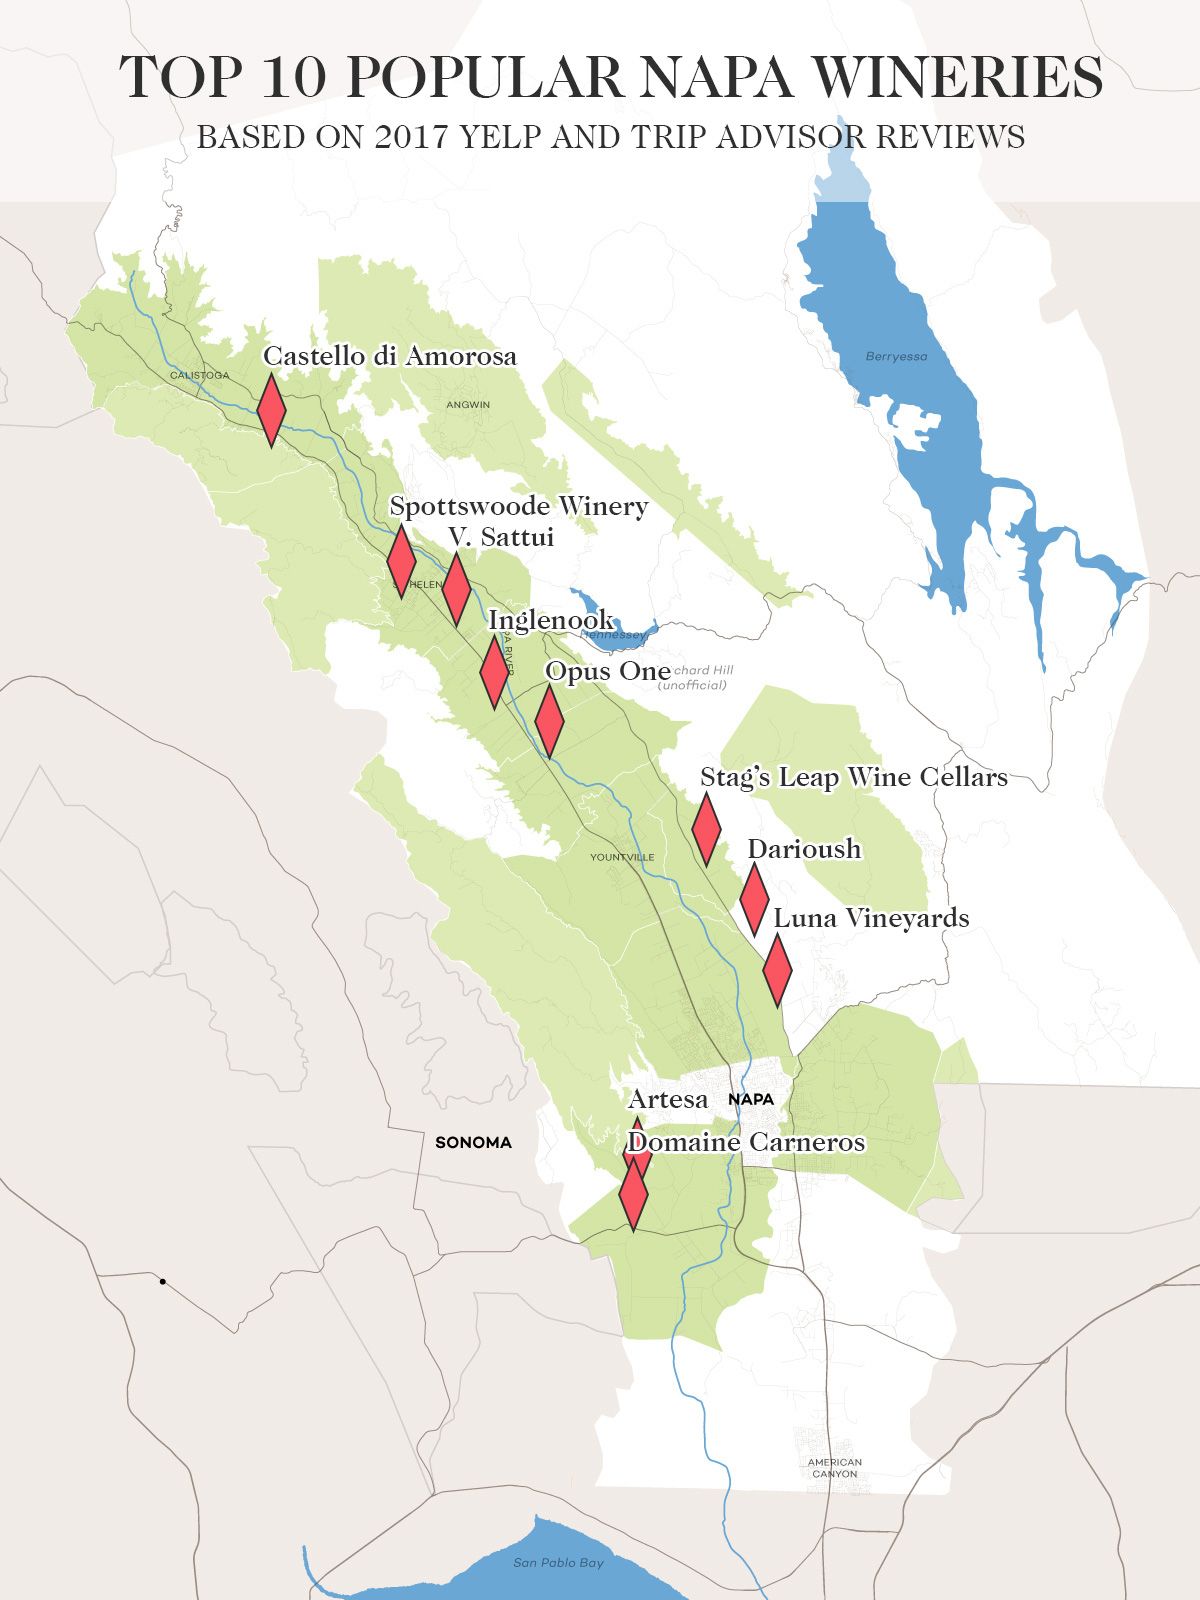 10 nhà máy rượu vang hàng đầu ở Thung lũng Napa theo bản đồ tư vấn chuyến đi và yelp năm 2017 của Wine Folly